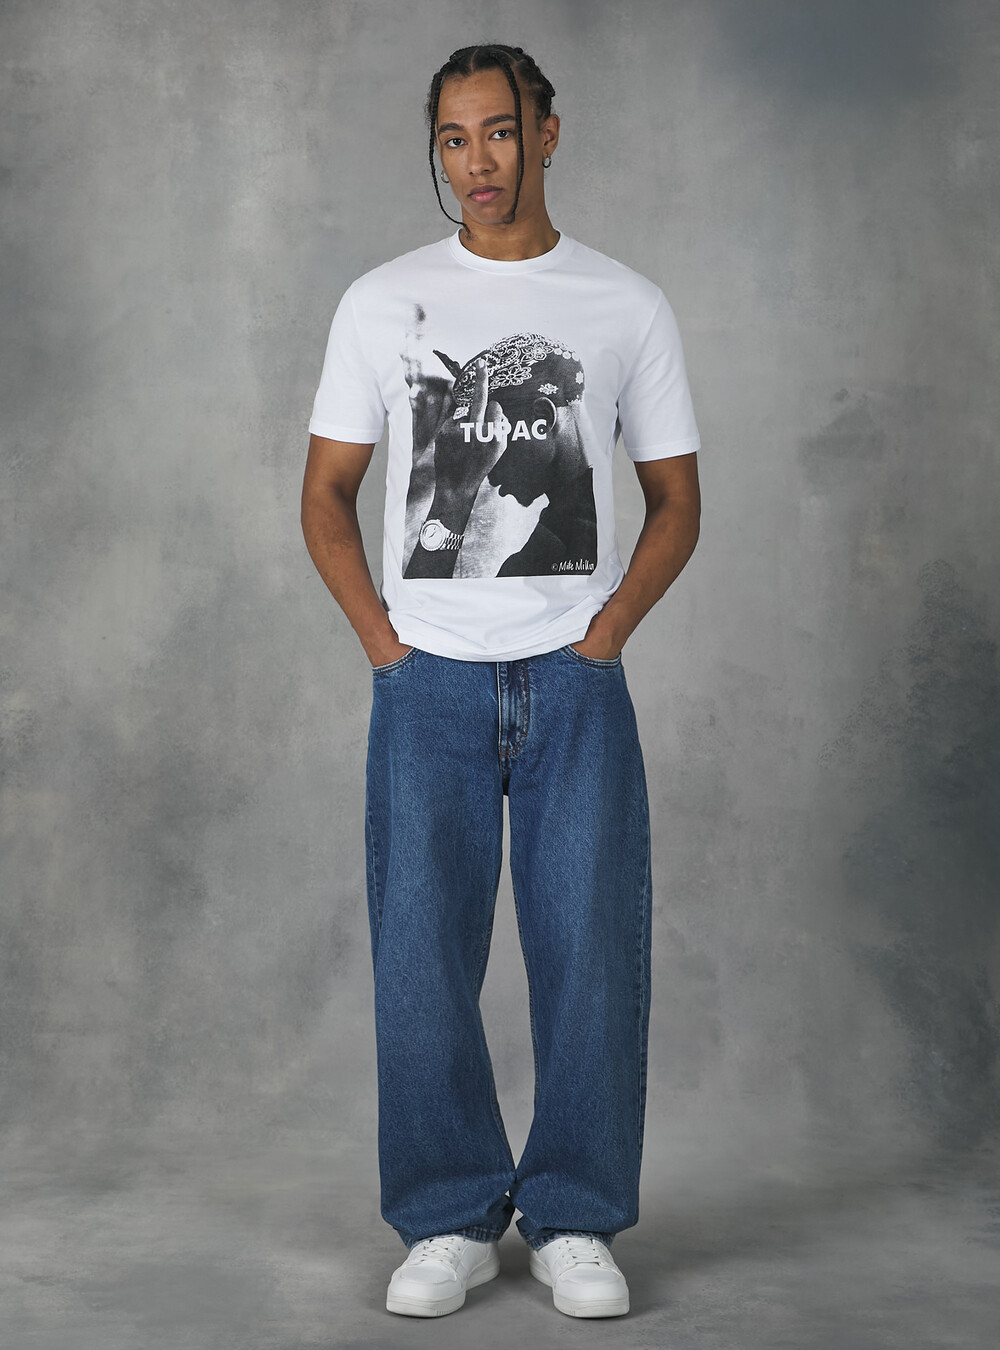 Tupac / Alcott t-shirt | Alcott | Men's catalog-alcott-storefront